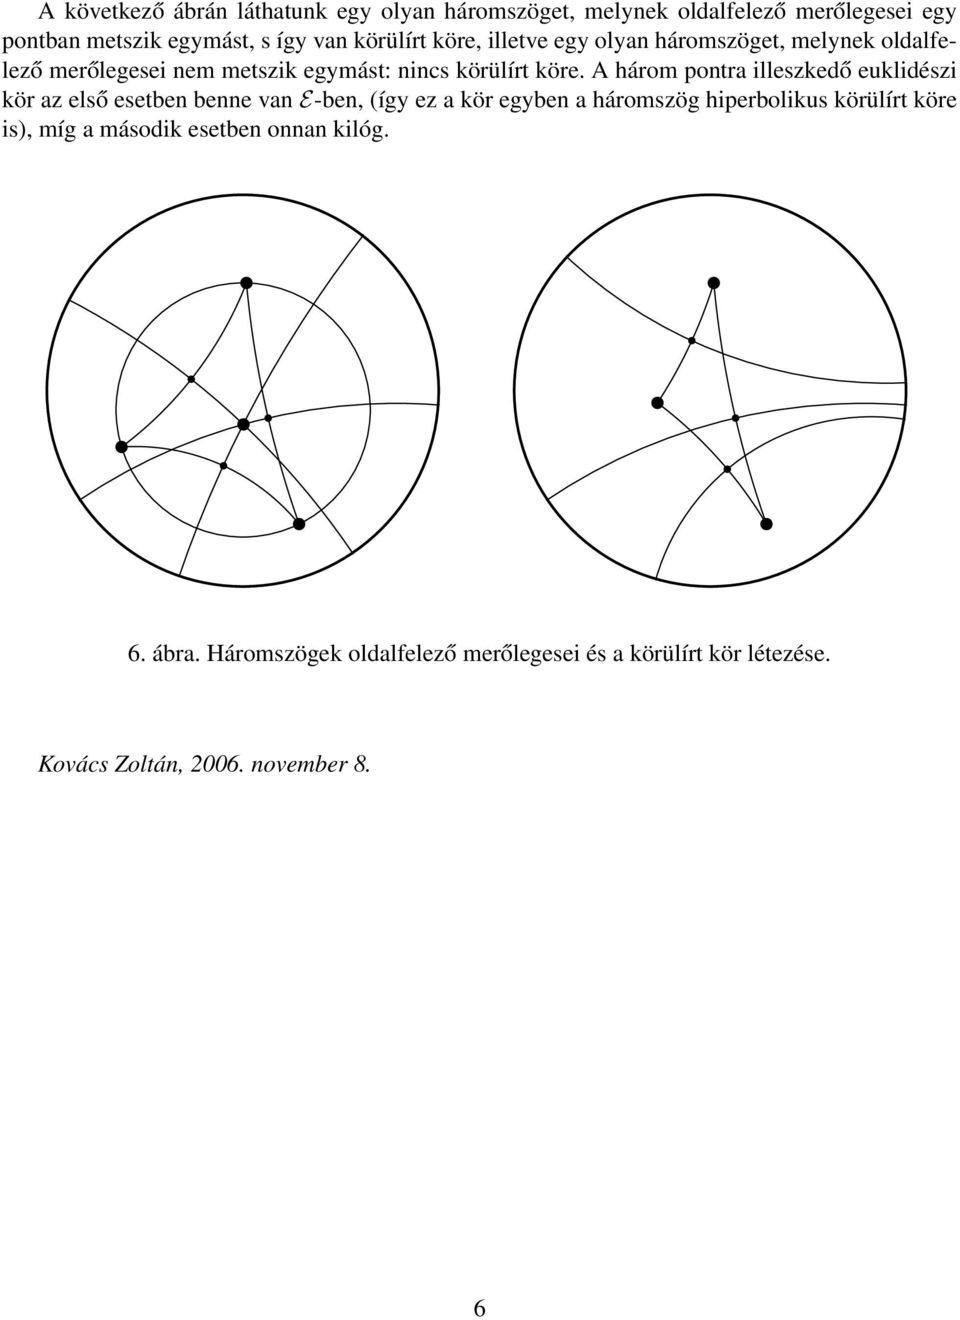 A három pontra illeszkedő euklidészi kör az első esetben benne van E-ben, (így ez a kör egyben a háromszög hiperbolikus körülírt